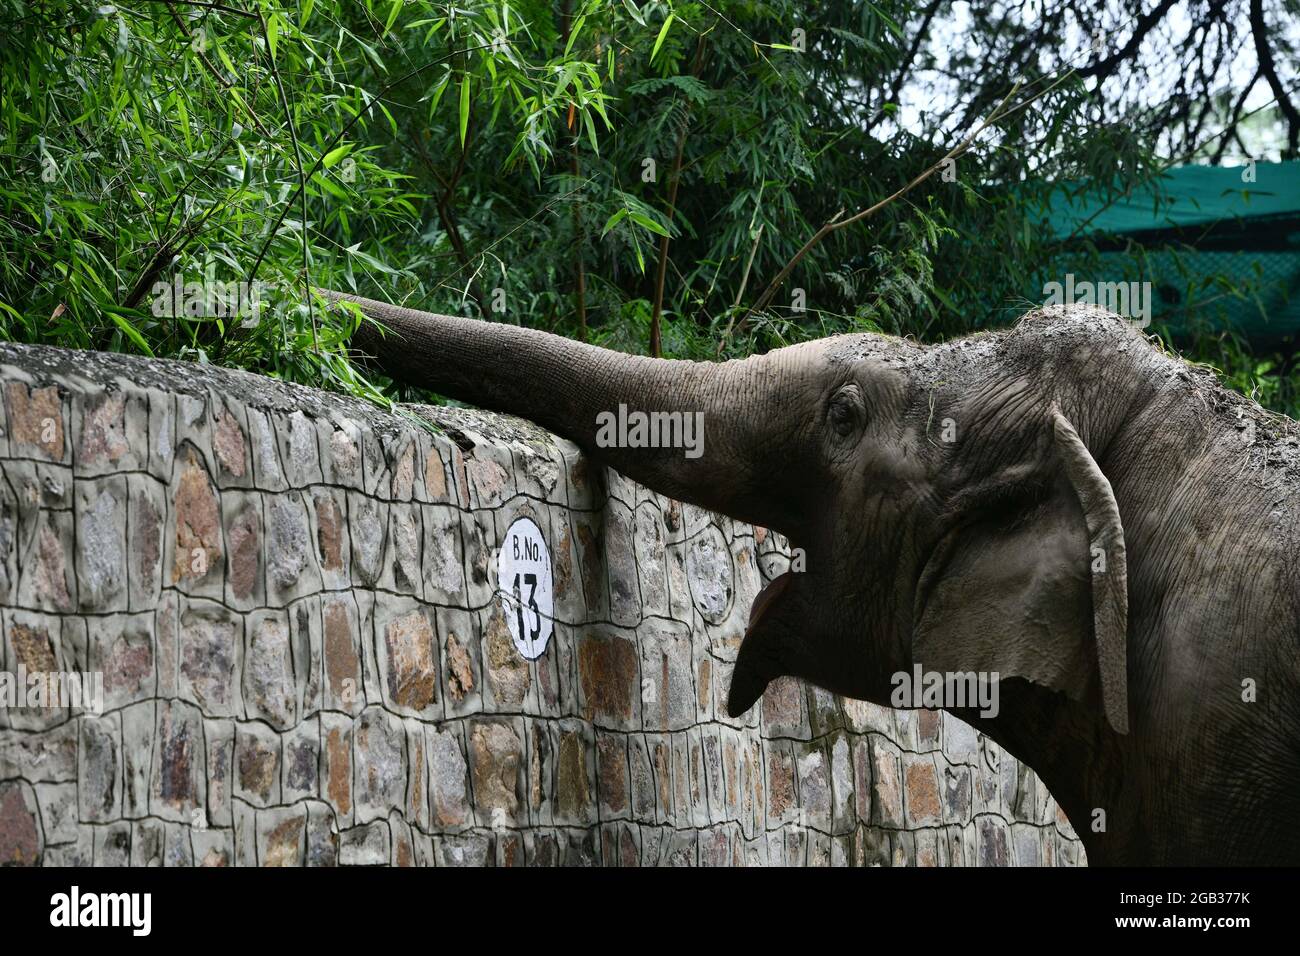 New Delhi. 1er août 2021. Photo prise le 1er août 2021 montre un éléphant dans son enceinte du zoo de Delhi en Inde. Le zoo de Delhi a rouvert ses portes au public et a fourni un service de réservation de billets en ligne aux visiteurs. Credit: Partha Sarkar/Xinhua/Alamy Live News Banque D'Images